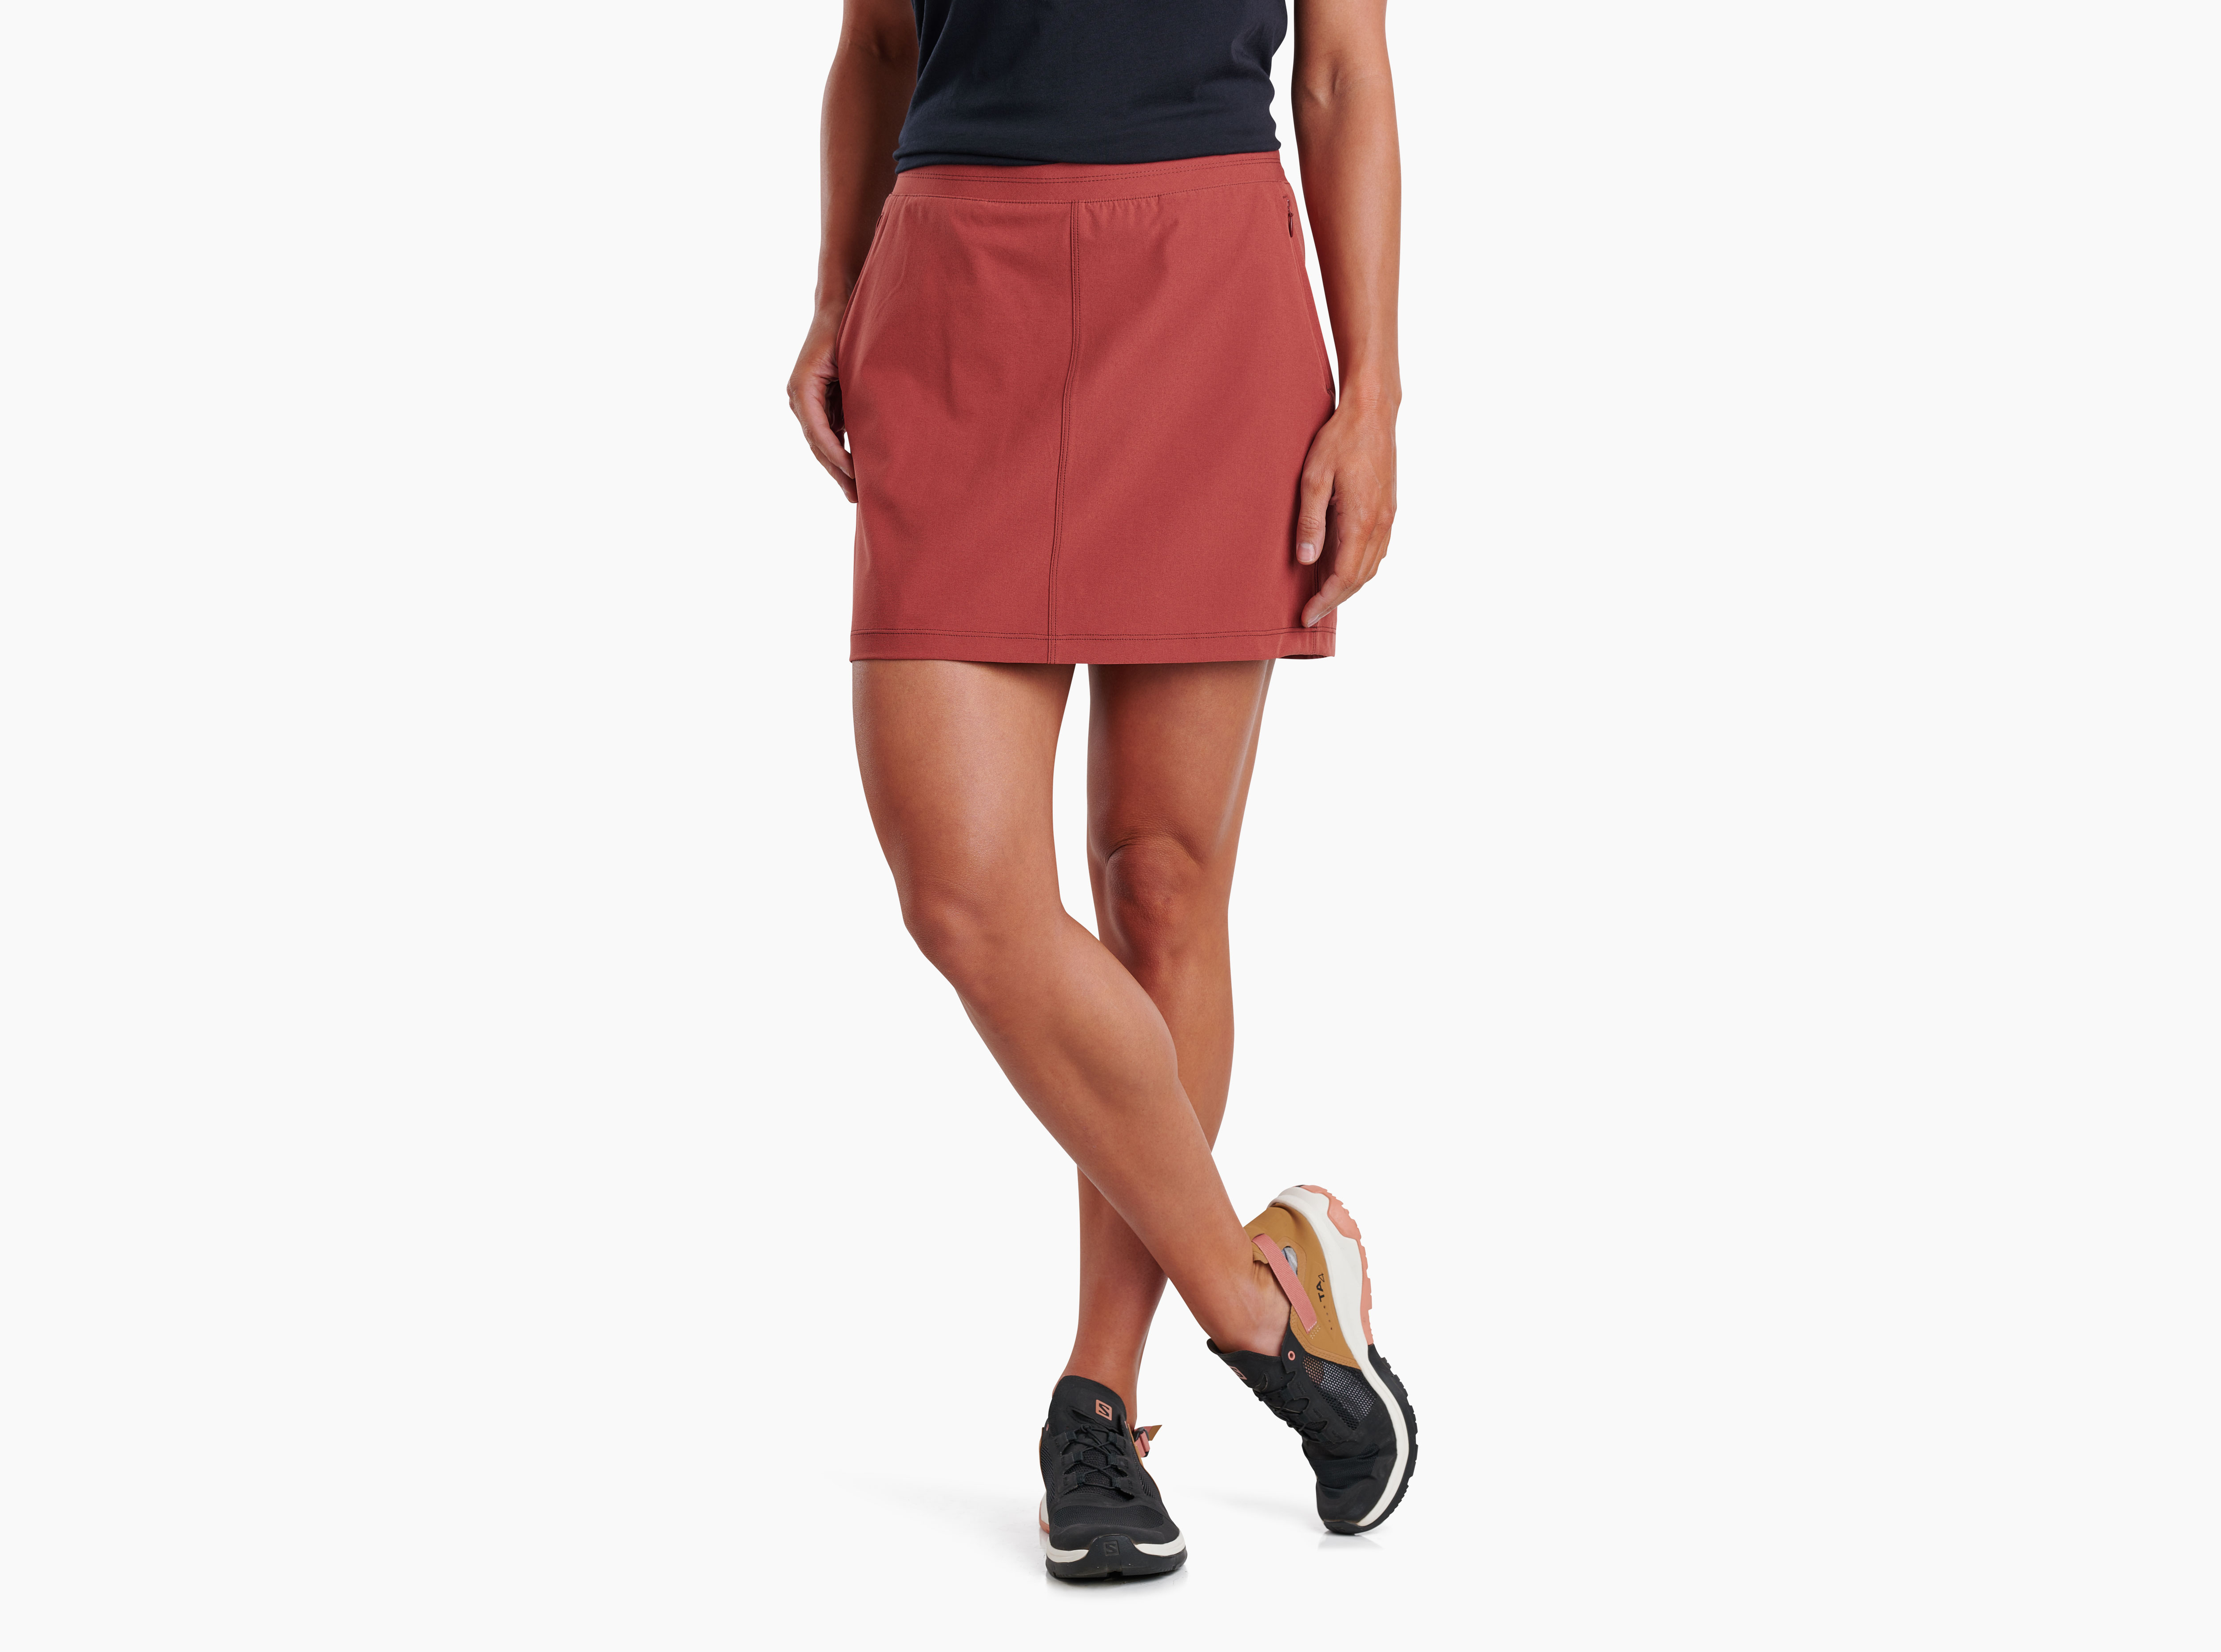 Freeflex™ Skort in Women's Skirts Skorts